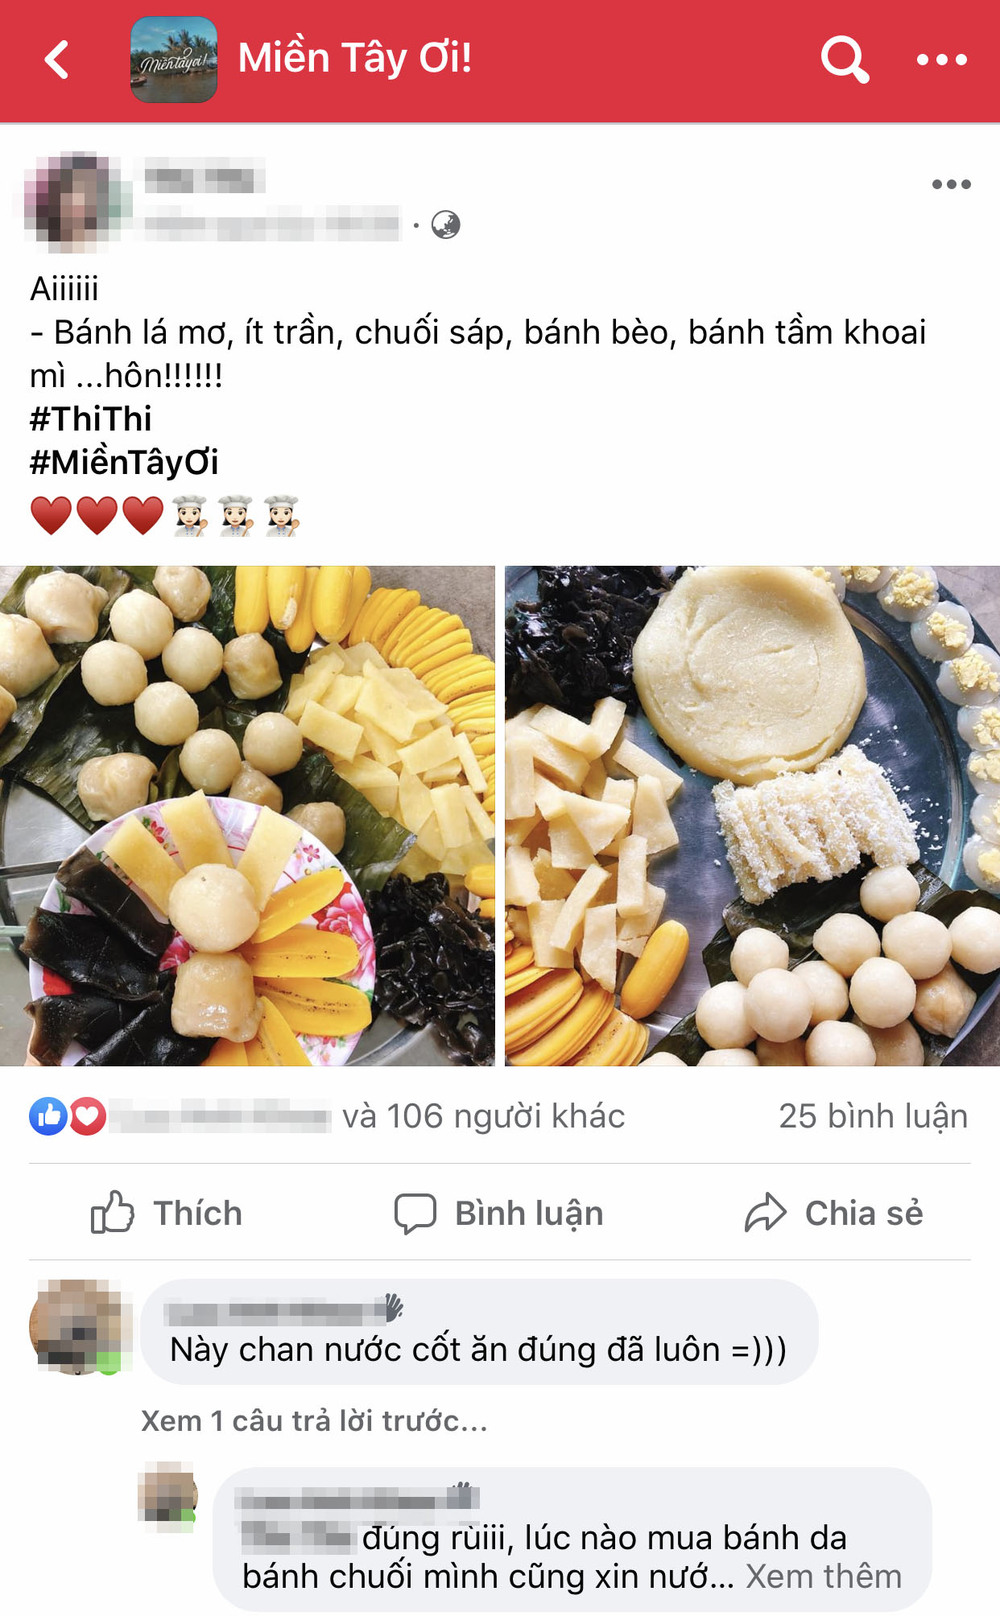  
Các thành viên group Việt Nam Ơi và Miền Tây Ơi "thi nhau" đăng tải những hình ảnh về món bánh lá. (Ảnh: Chụp màn hình)